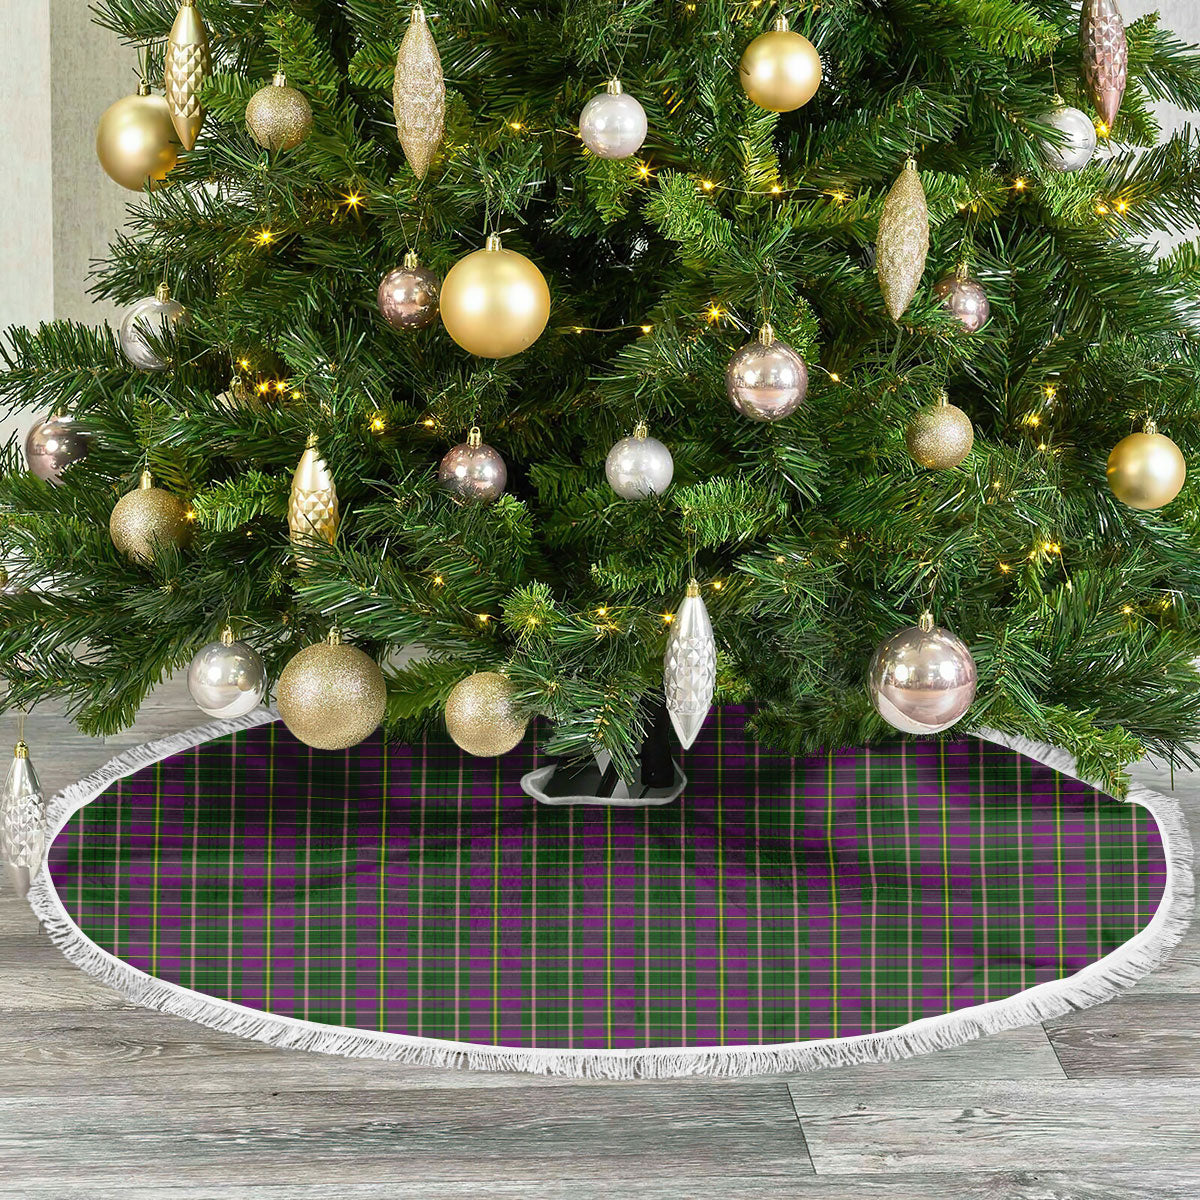 Tailyour Tartan Christmas Tree Skirt